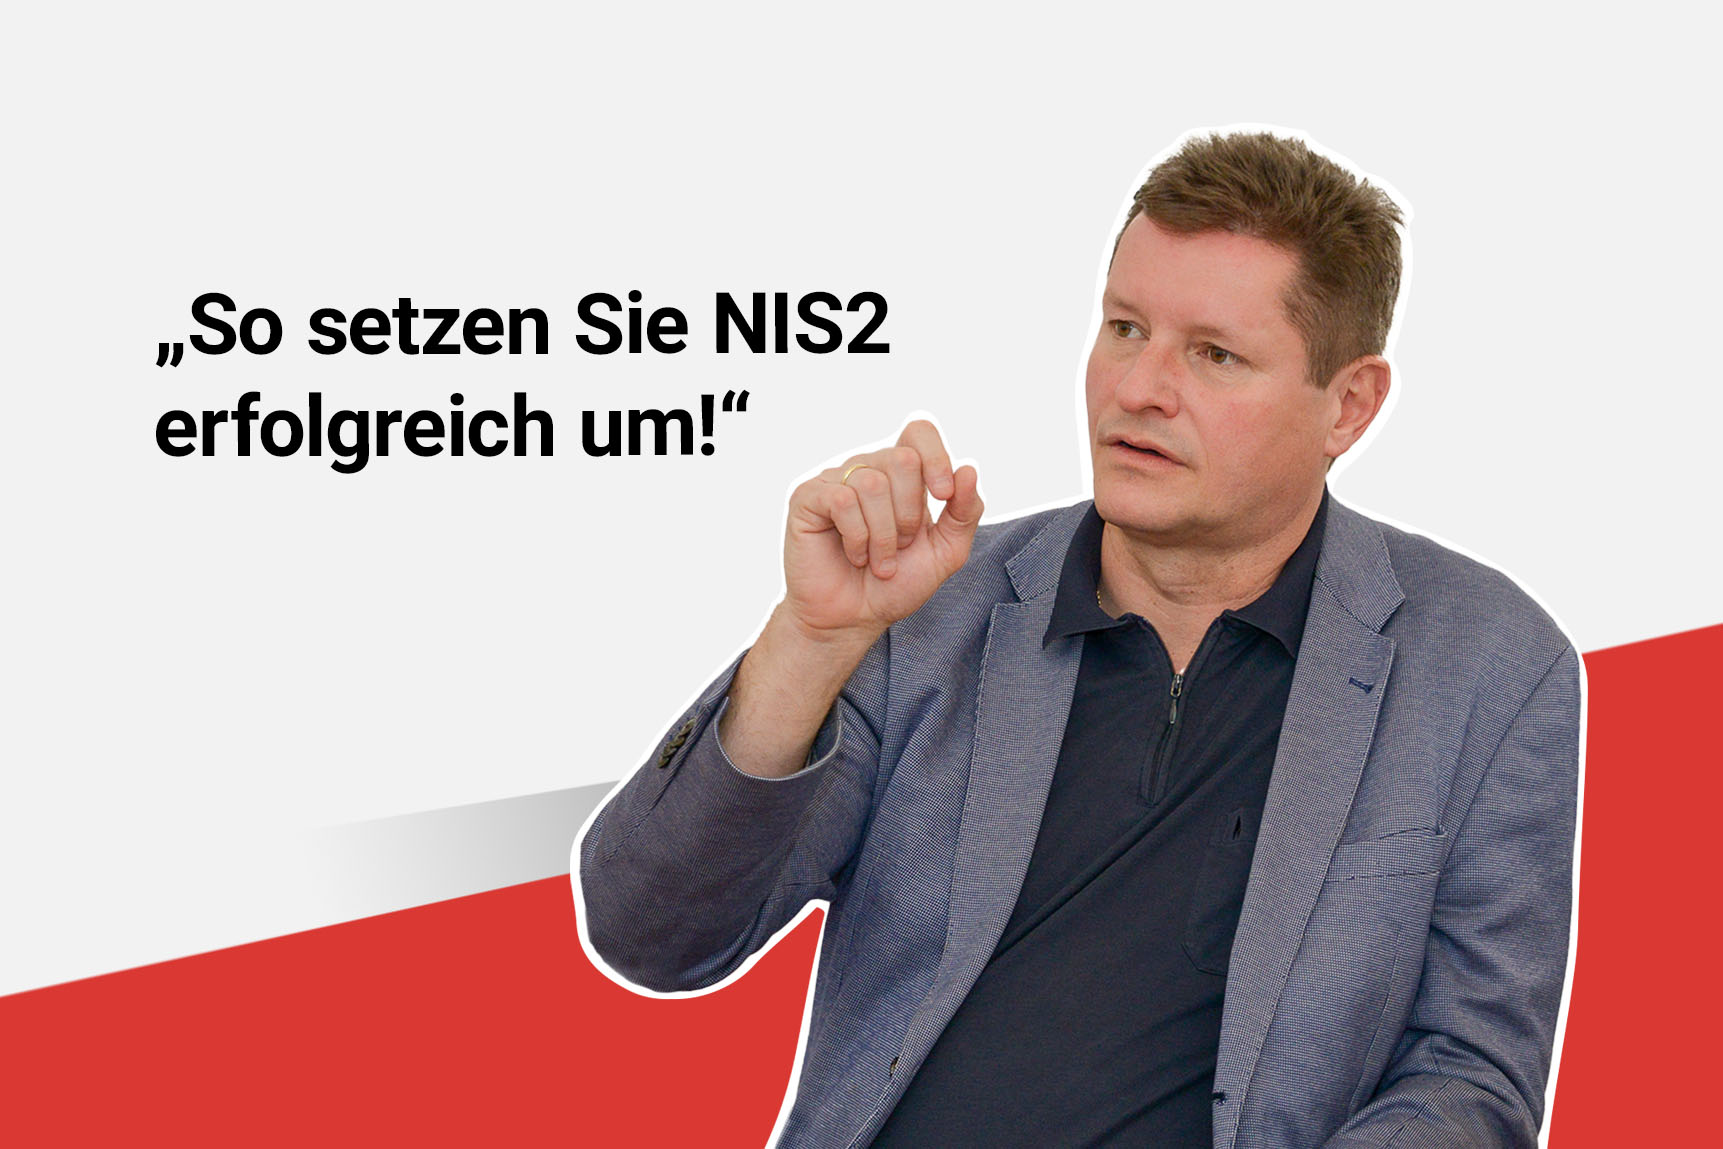 "So setzen Sie NIS2 erfolgreich um!“ - Manuel Kathofer